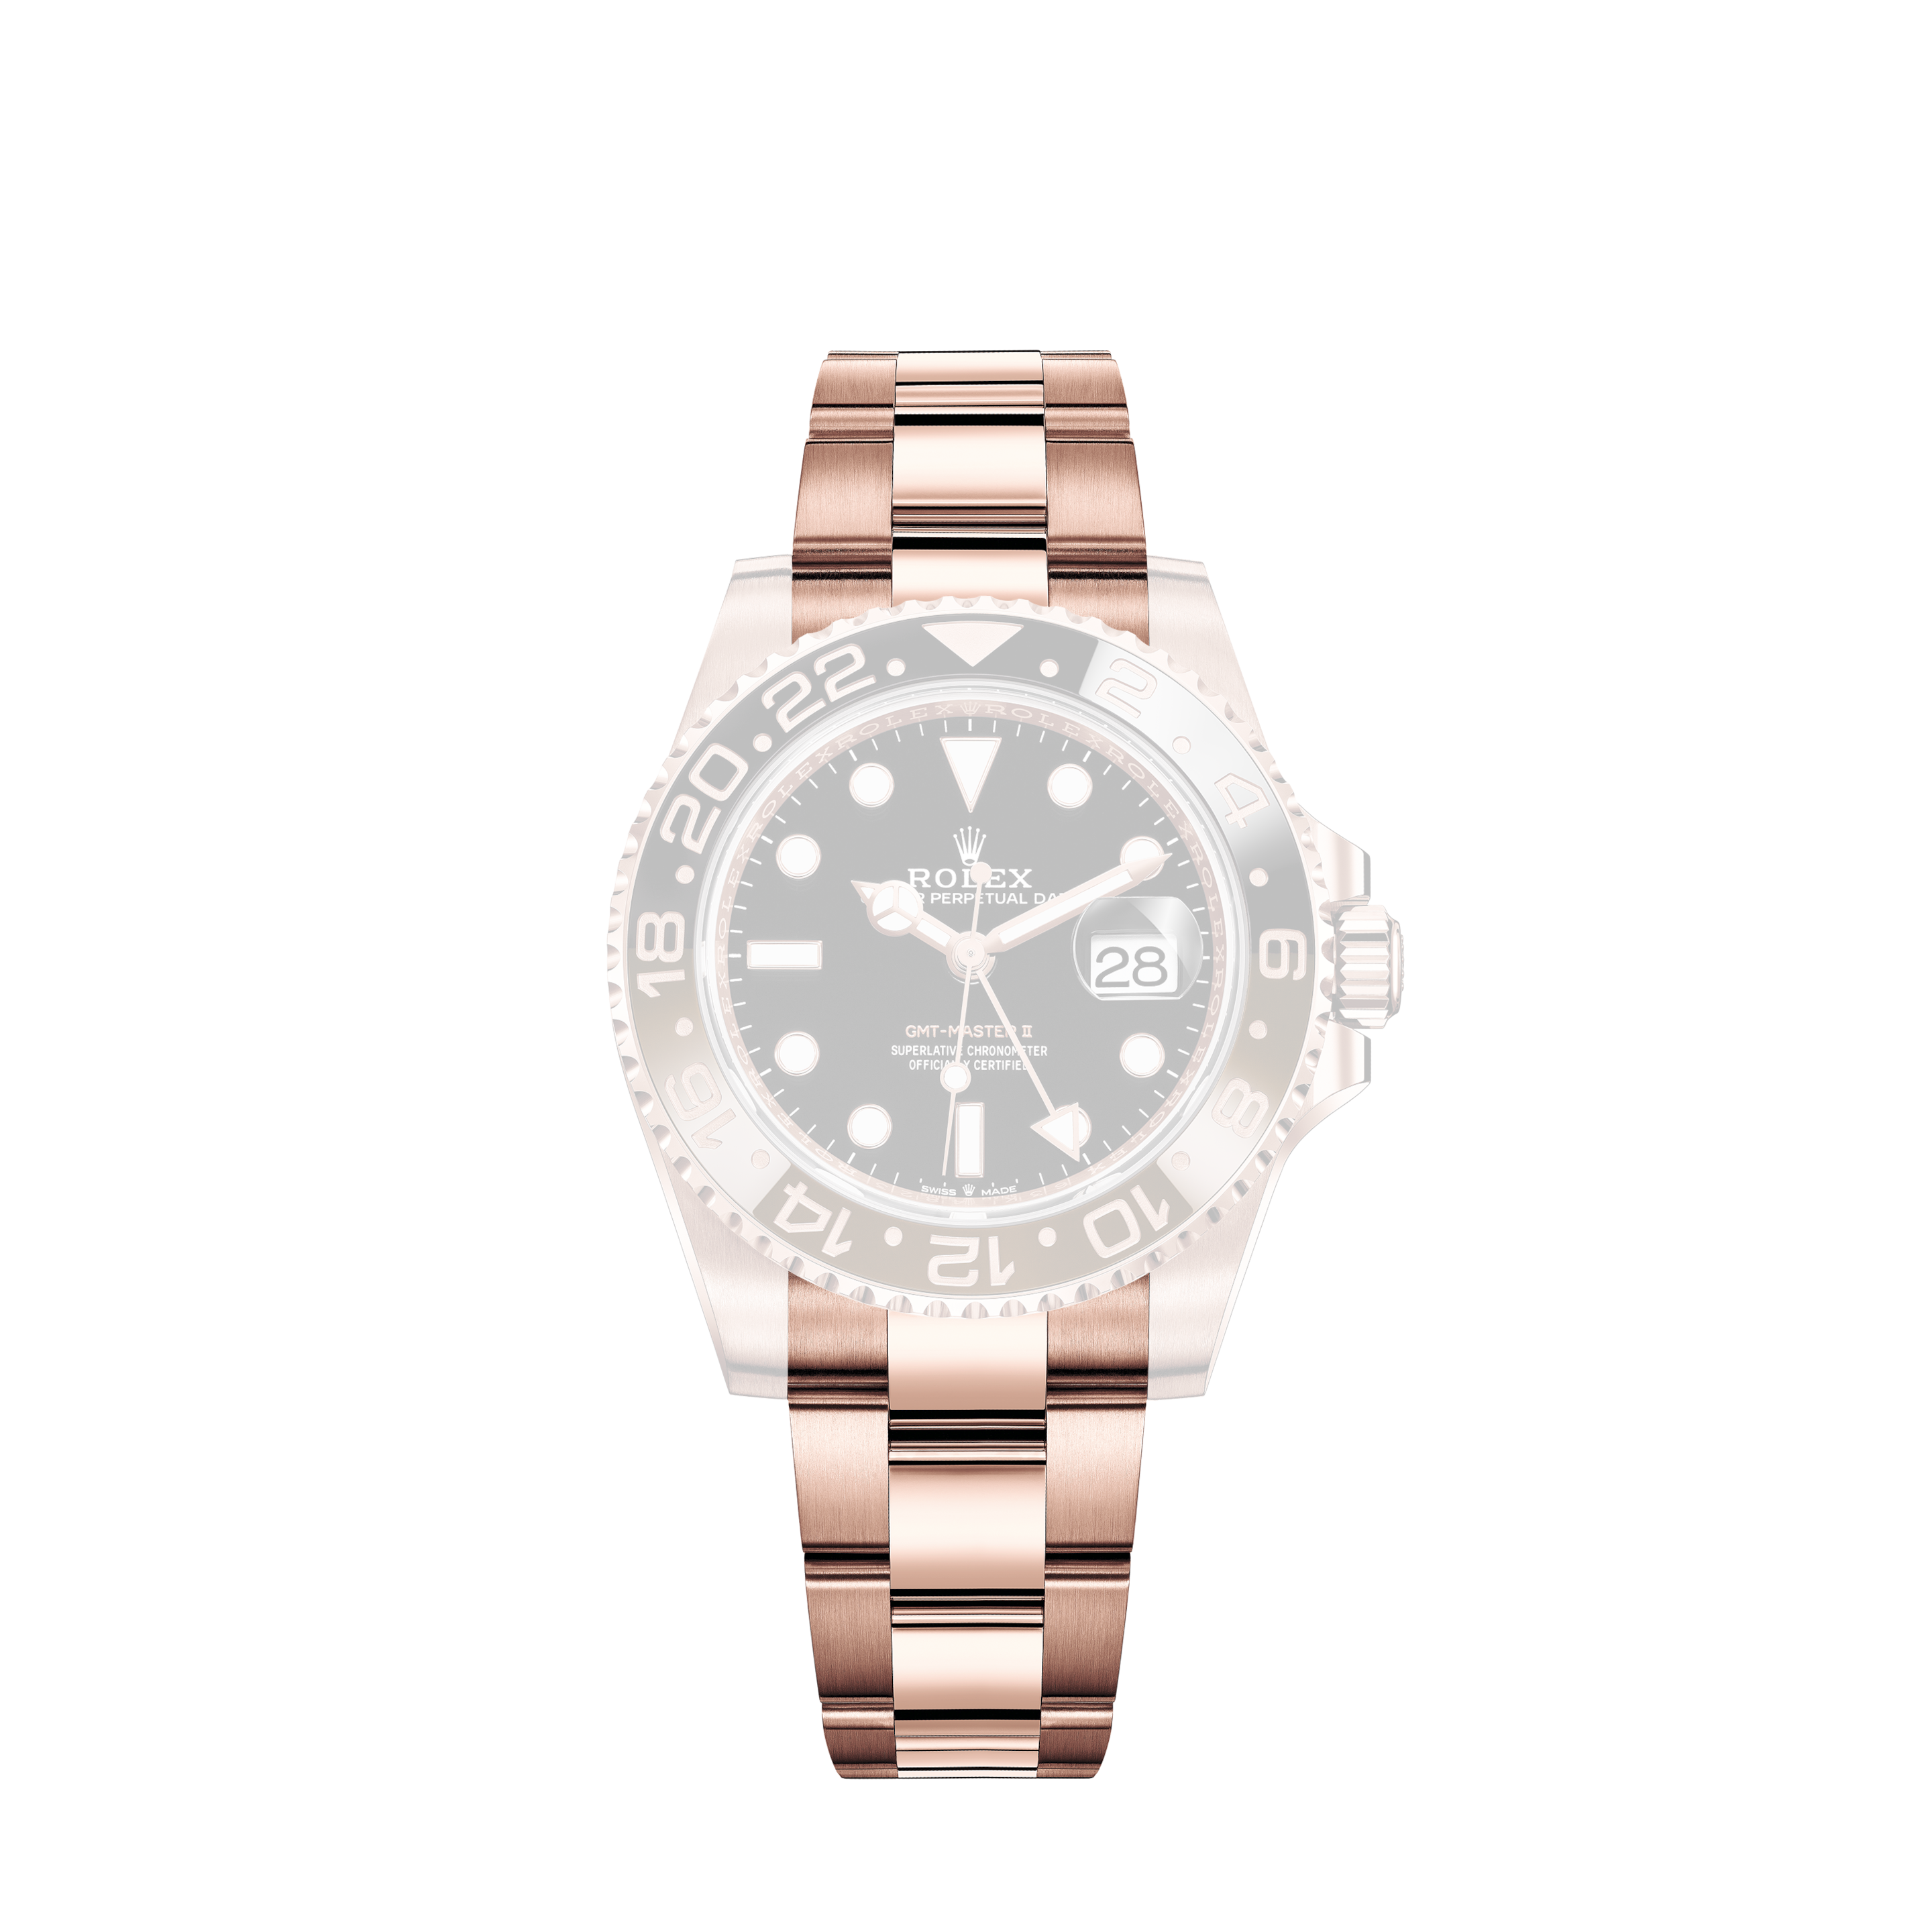 Rolex Datejust 36mm With Custom Zebra Diamond Dial-bezelRolex Datejust 36mm Wrist Watch with White Diamond Dial & Diamond Bezel Jubilee Band